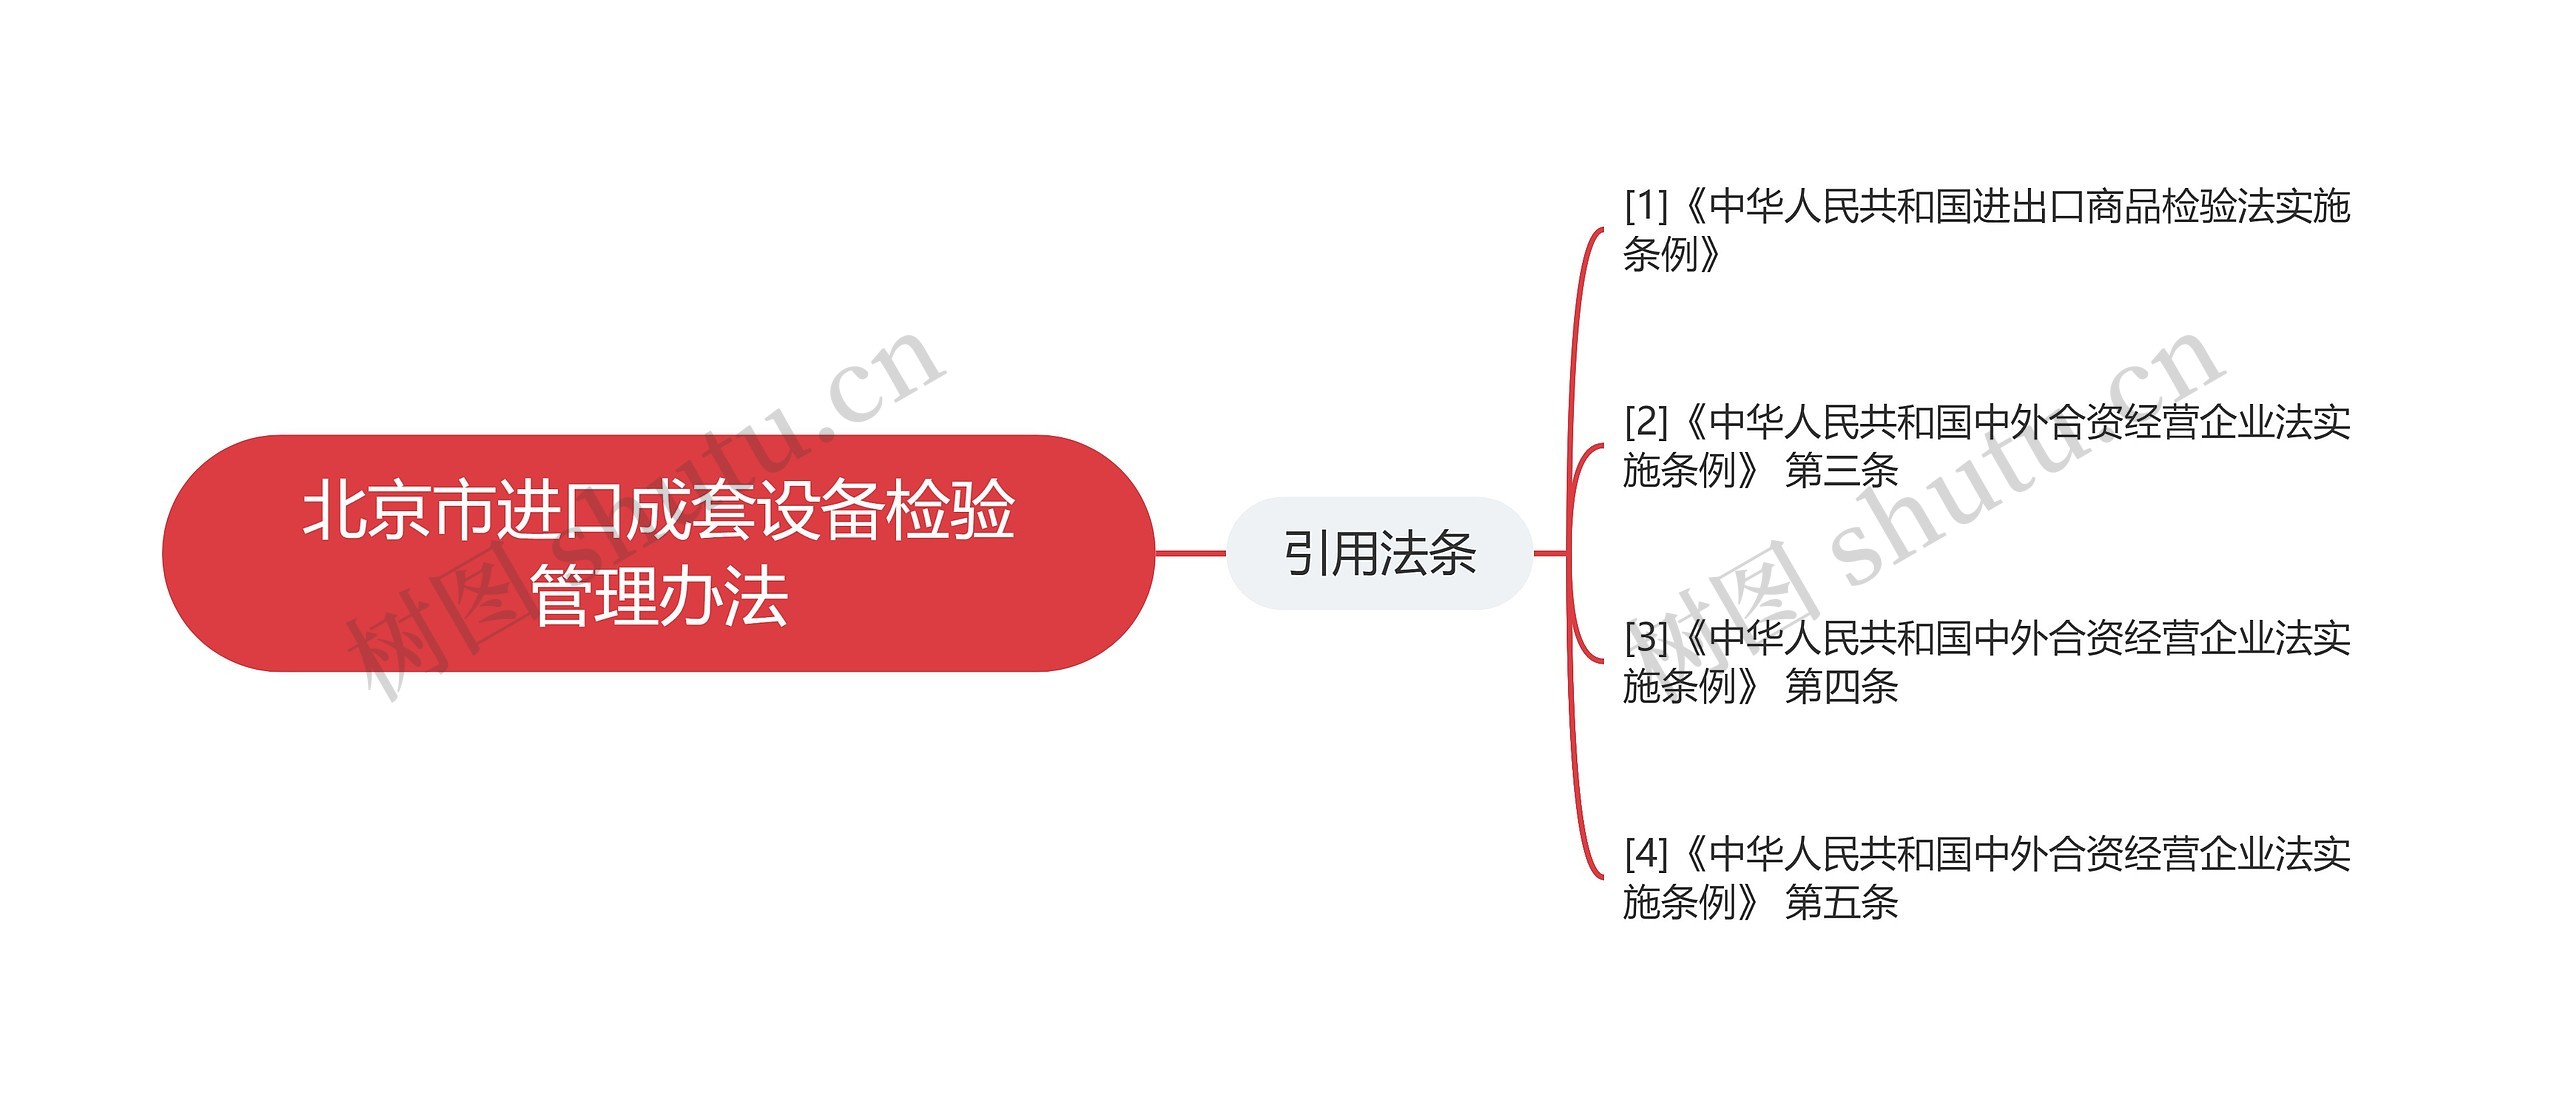 北京市进口成套设备检验管理办法思维导图